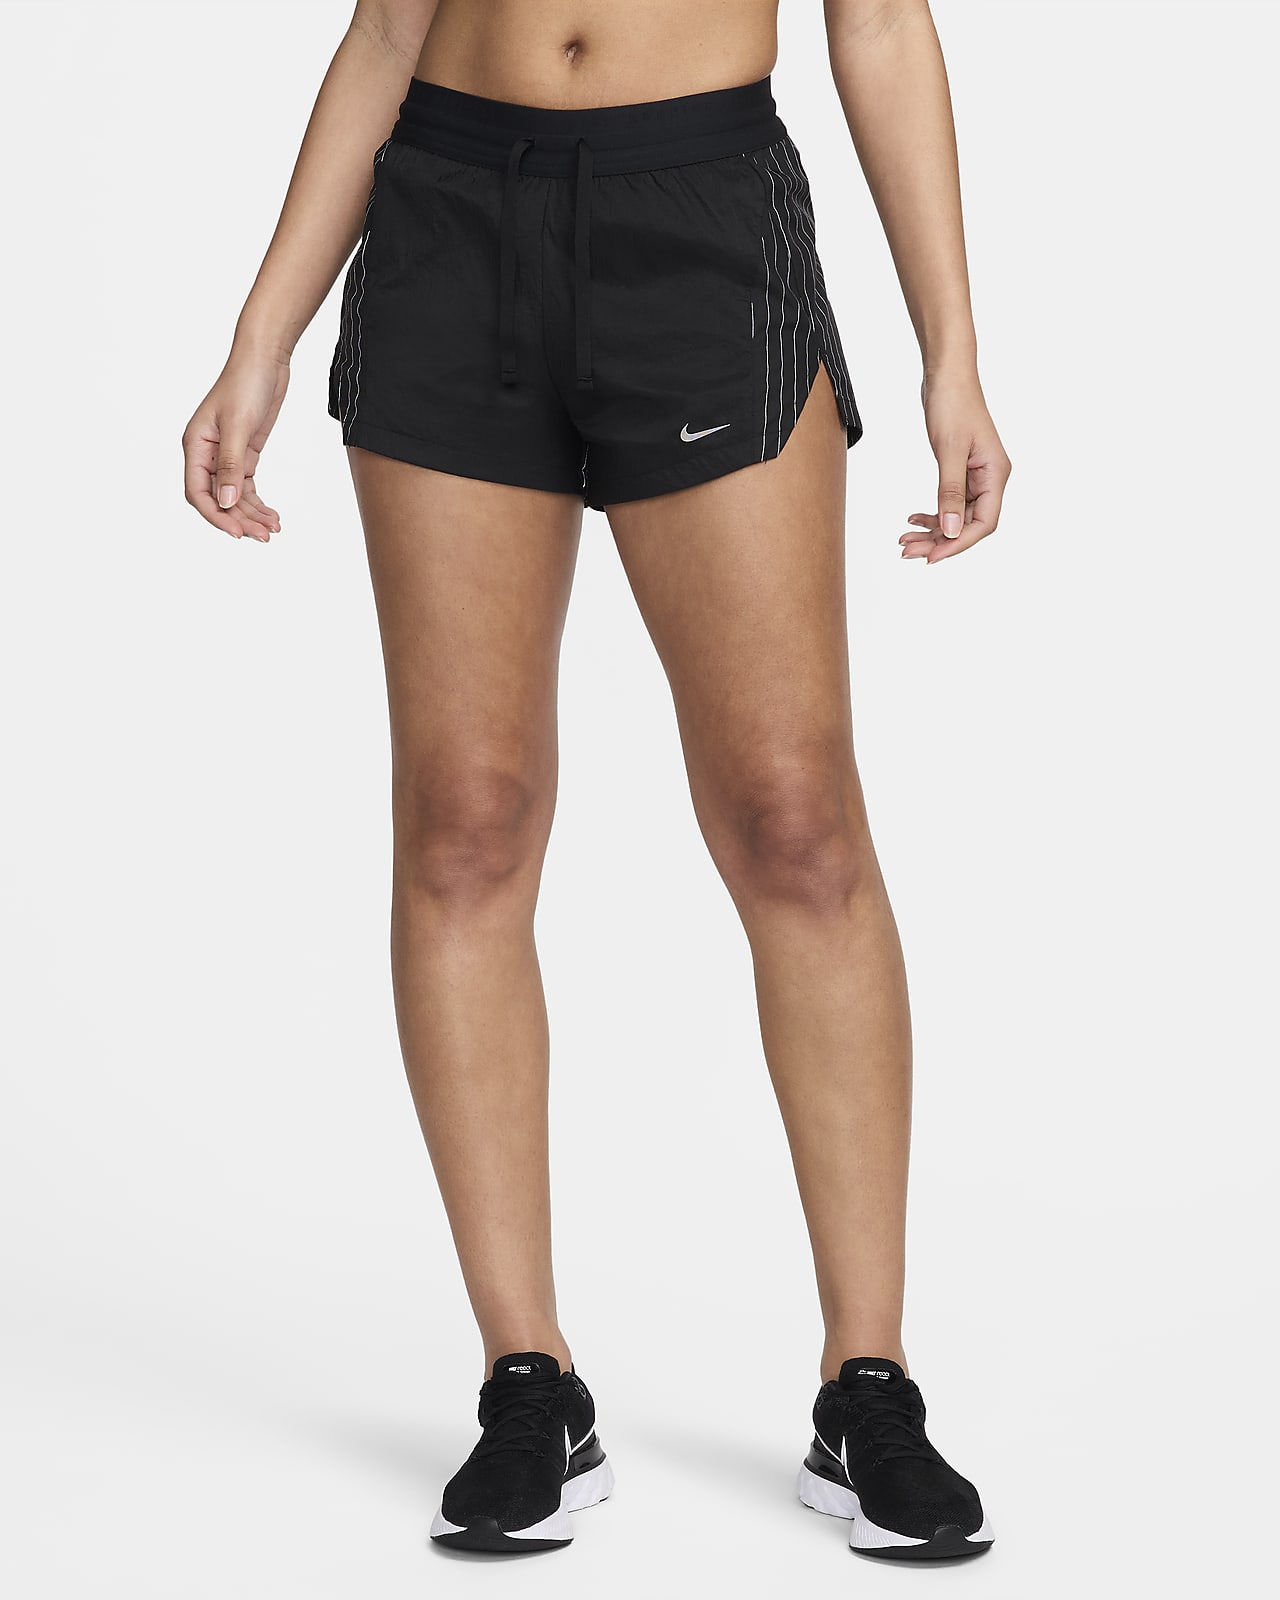 Γυναικείο σορτς μεσαίου ύψους για τρέξιμο με επένδυση εσωτερικού σορτς Nike Running Division 8 cm